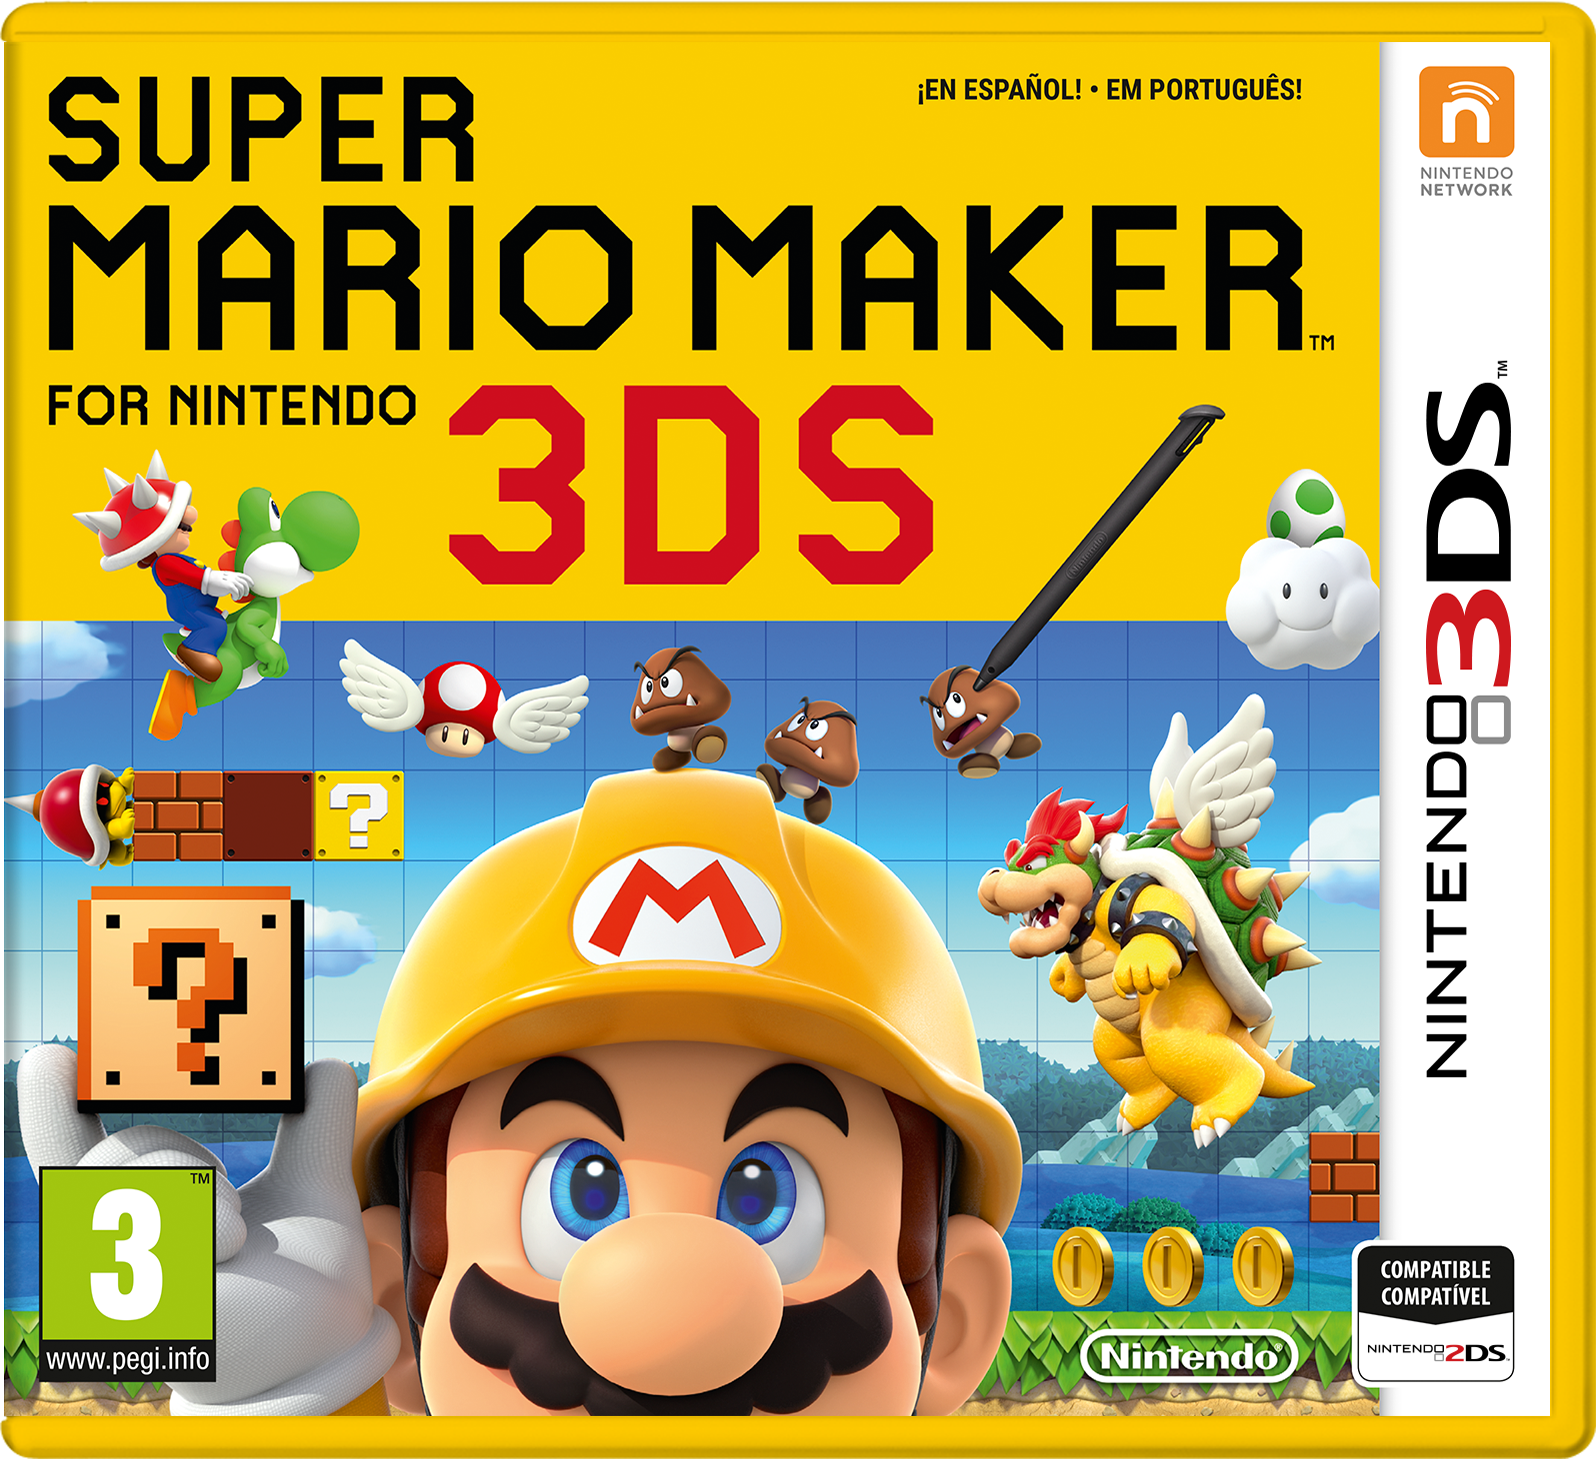 RPG Maker Fes, Jogos para a Nintendo 3DS, Jogos